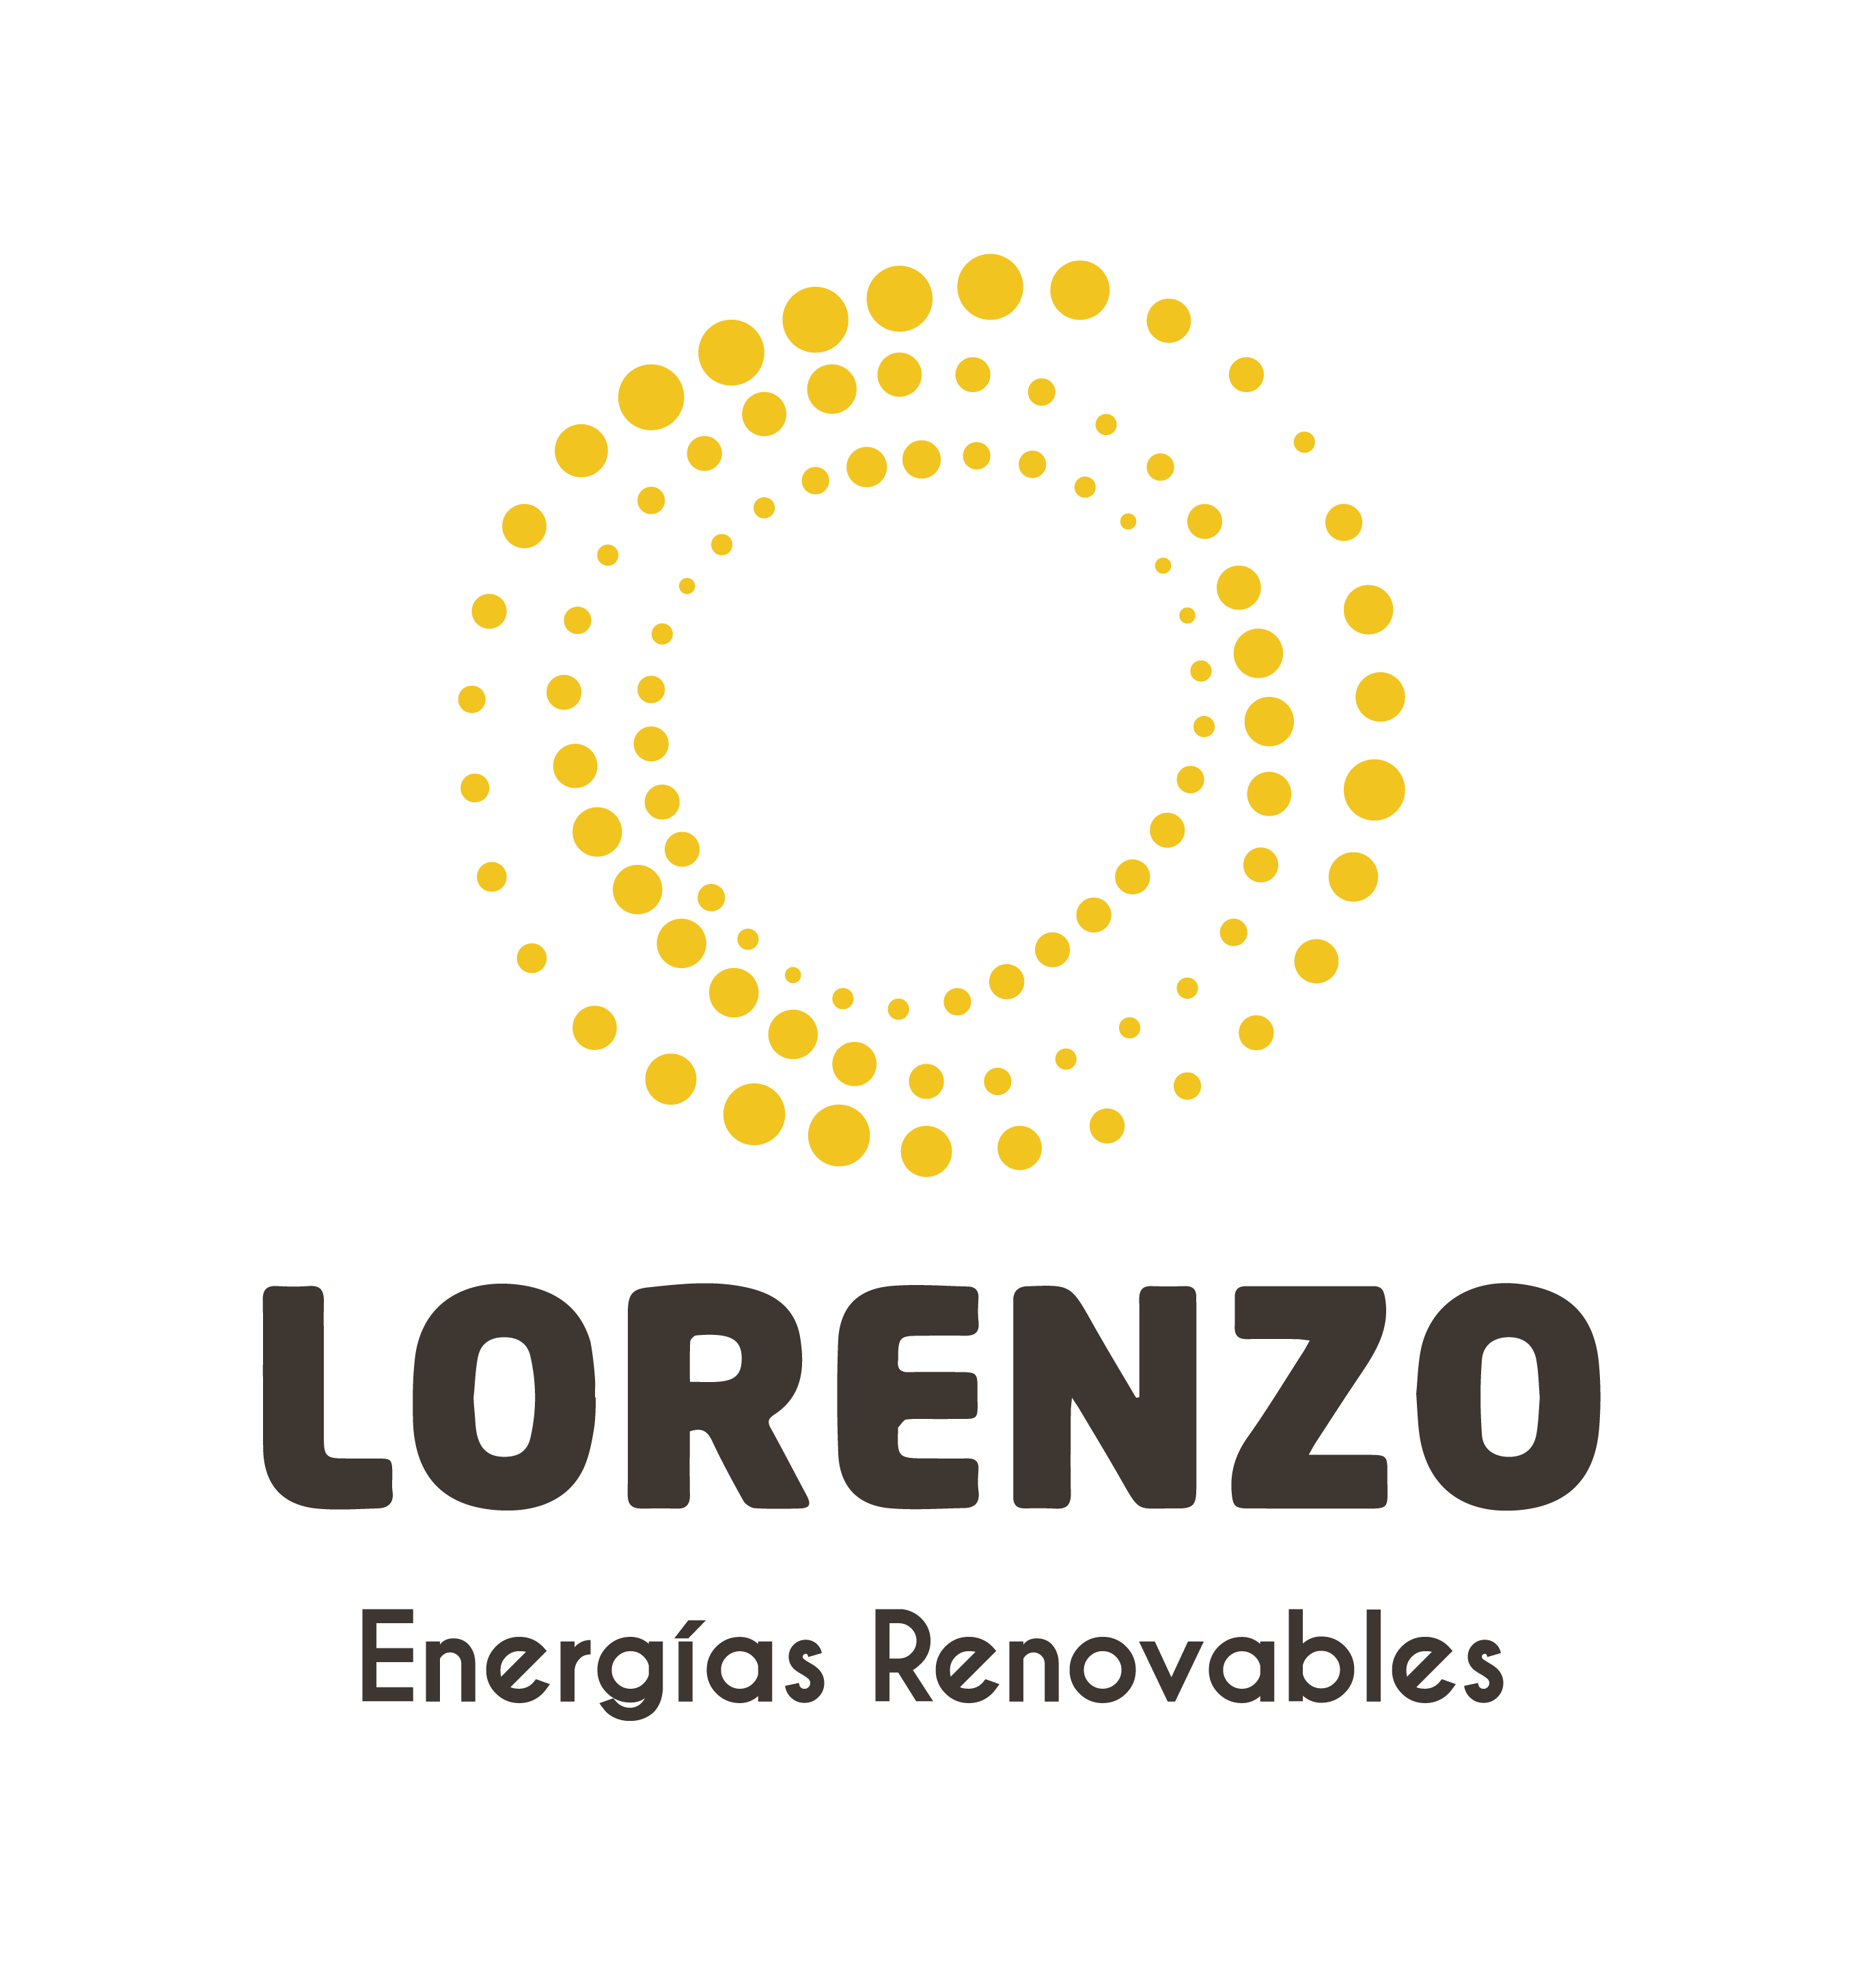 Lorenzo Energías Renovables